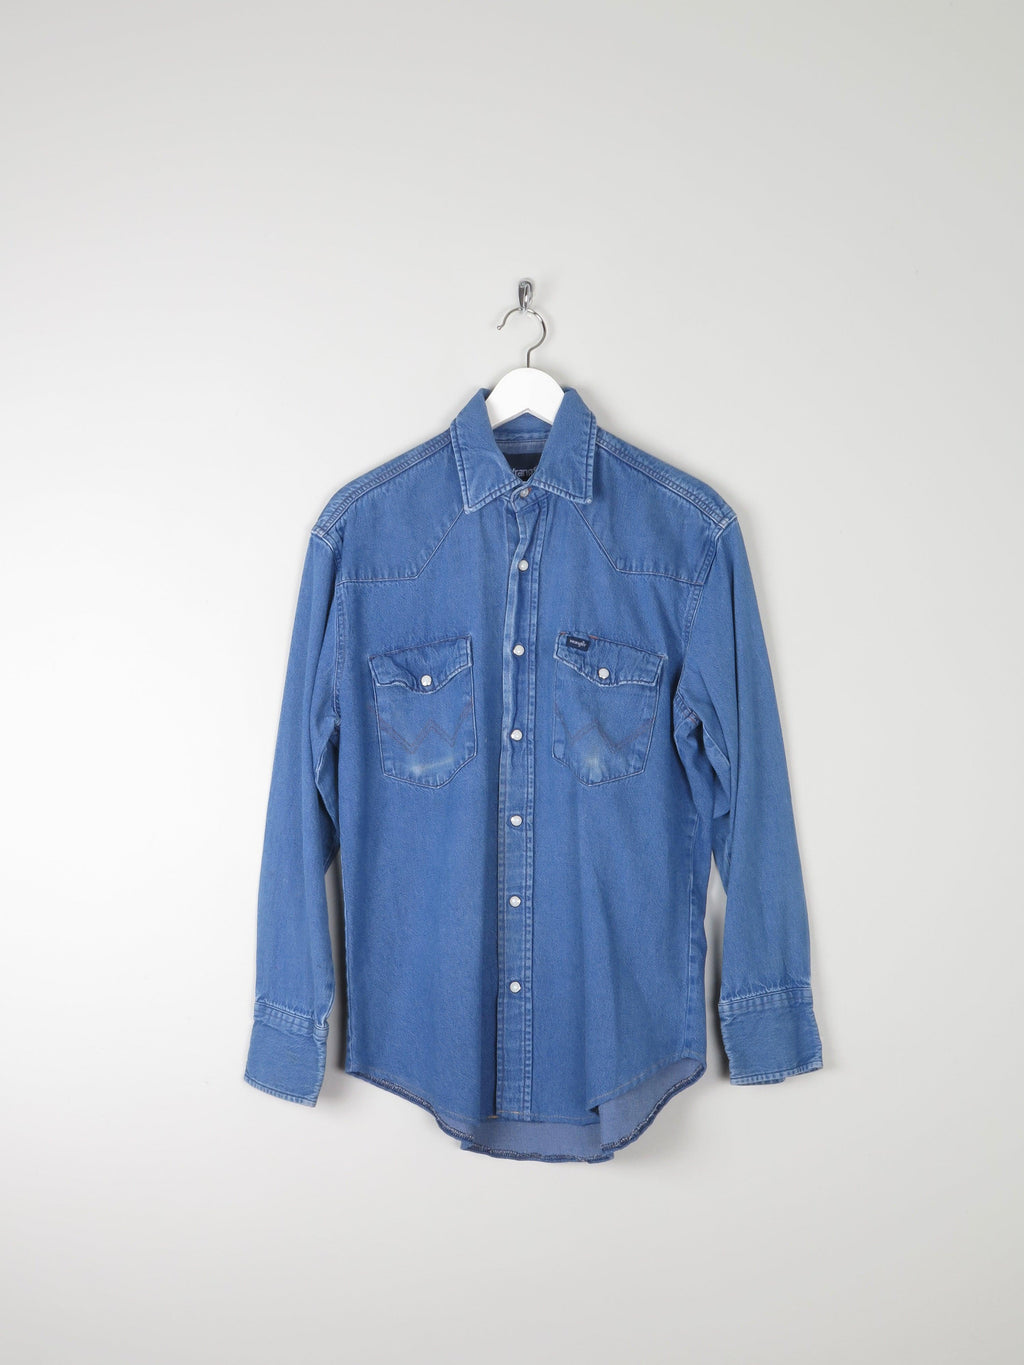 Men's Vintage Wrangler Denim Shirt M - The Harlequin